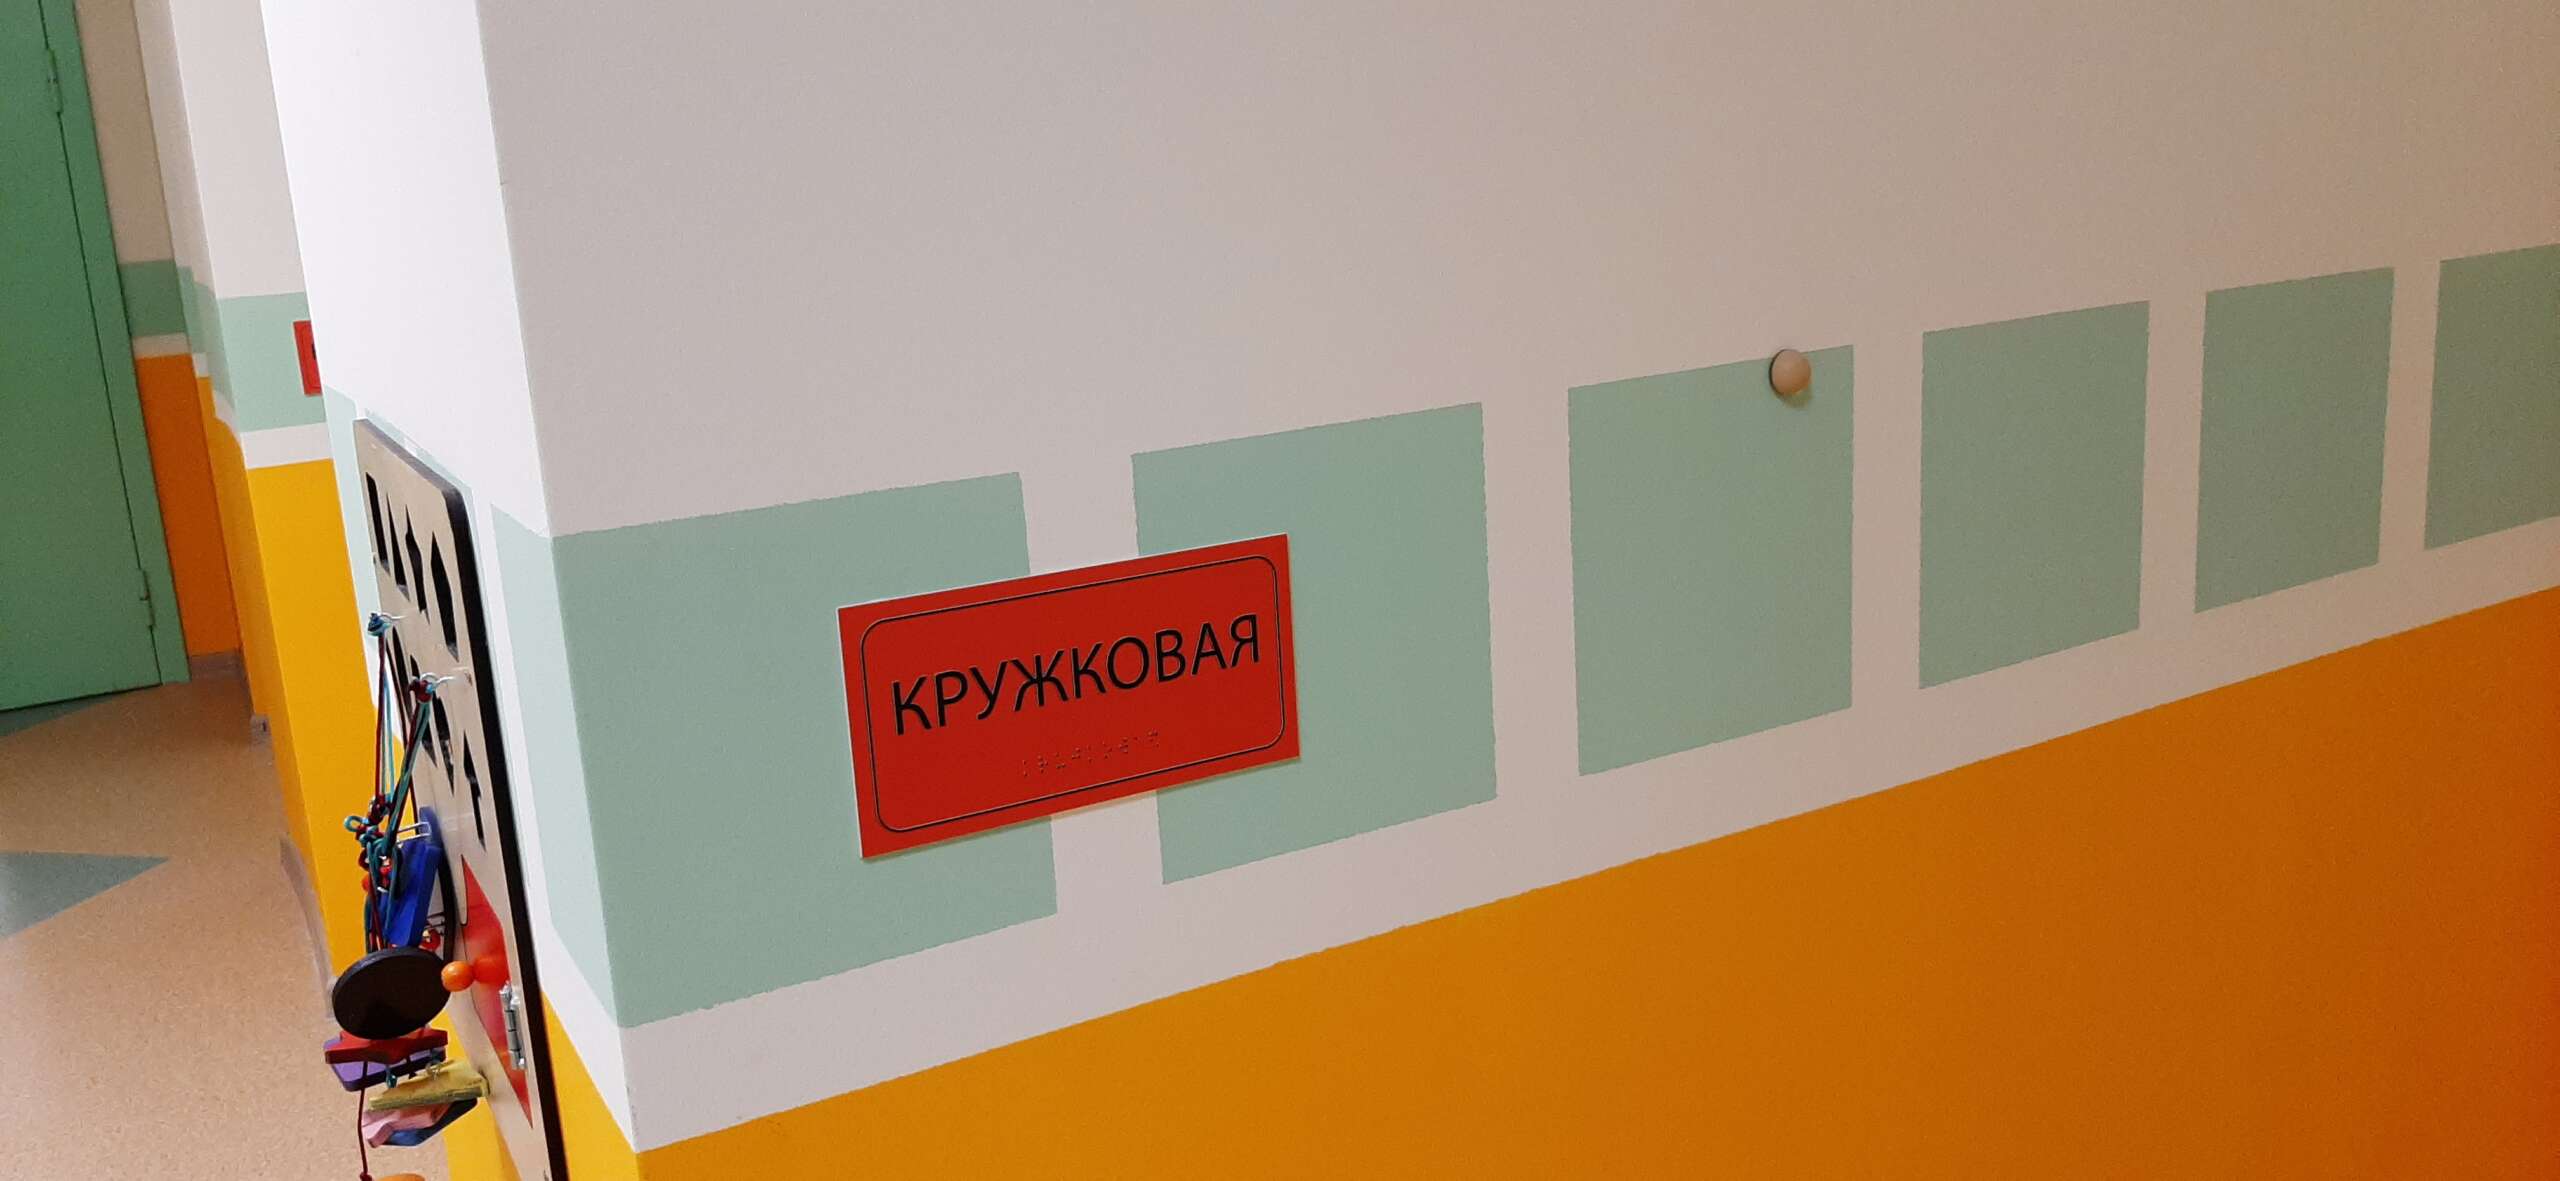 Тактильная табличка названия кабинета на контрастном фоне, дублирующая азбука Брайля